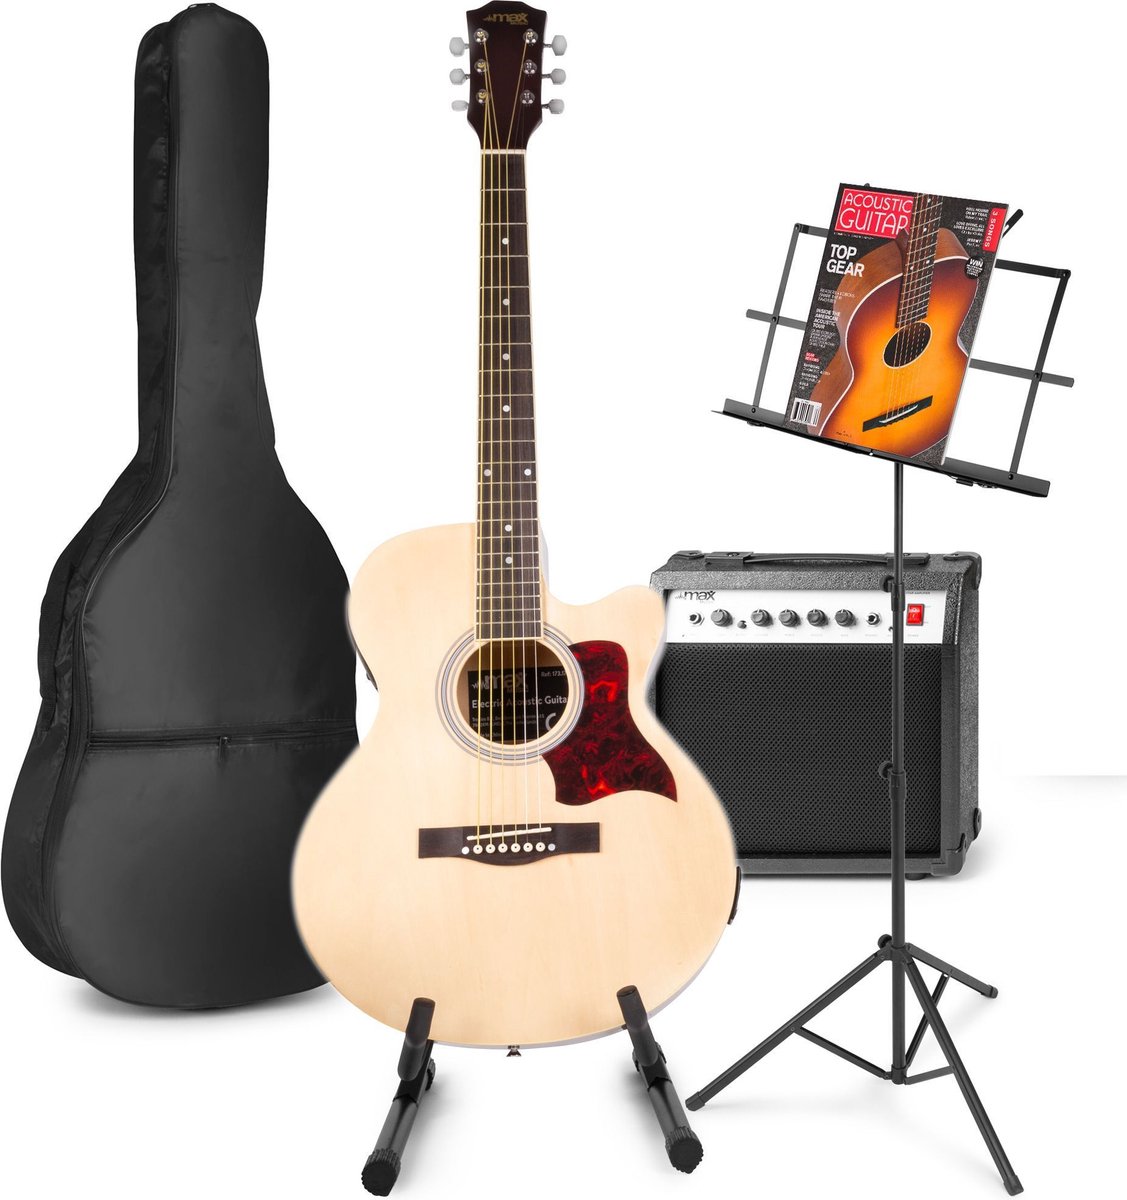 Elektrisch akoestische gitaar - MAX ShowKit gitaarset met o.a 40W gitaar versterker, gitaar standaard, muziekstandaard en gitaar stemapparaat - Hout